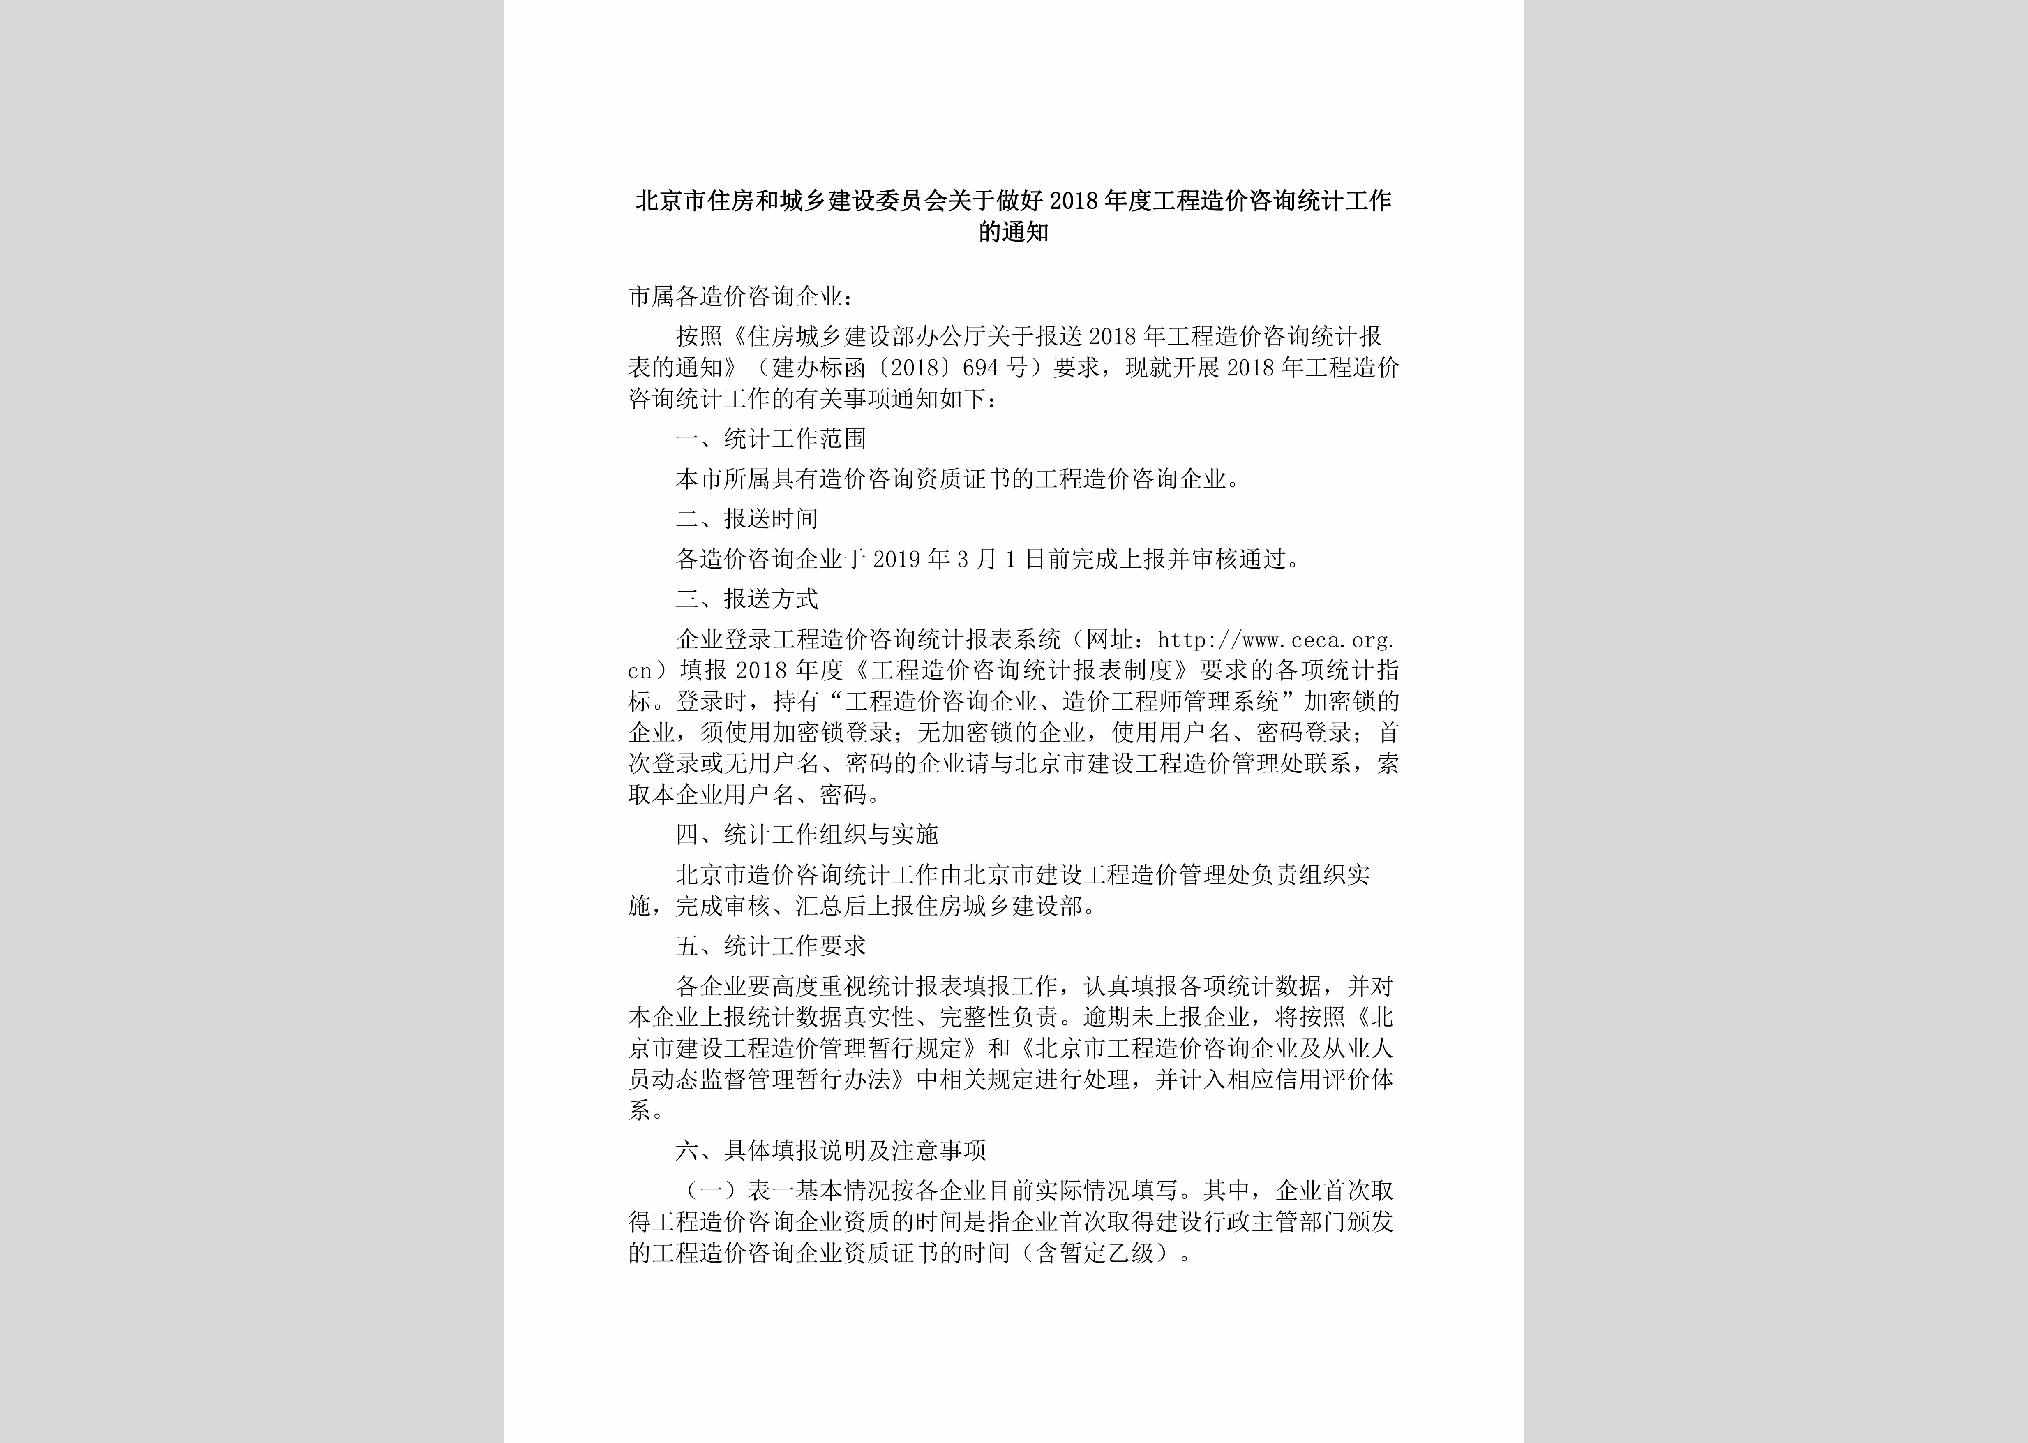 BJ-NDGCZJZX-2019：北京市住房和城乡建设委员会关于做好2018年度工程造价咨询统计工作的通知